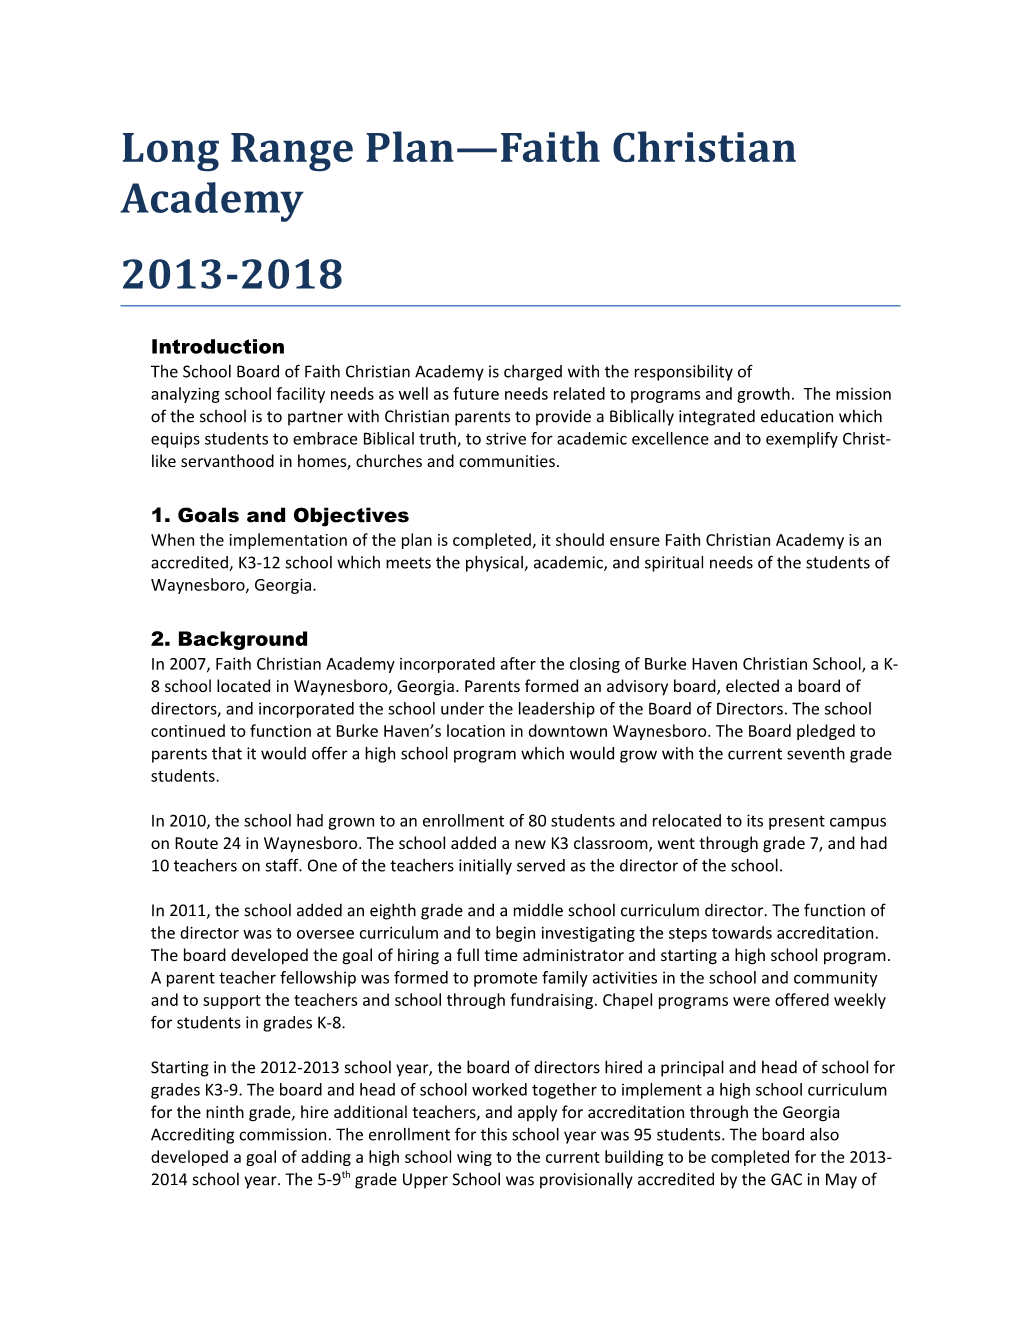 Long Range Plan Faith Christian Academy